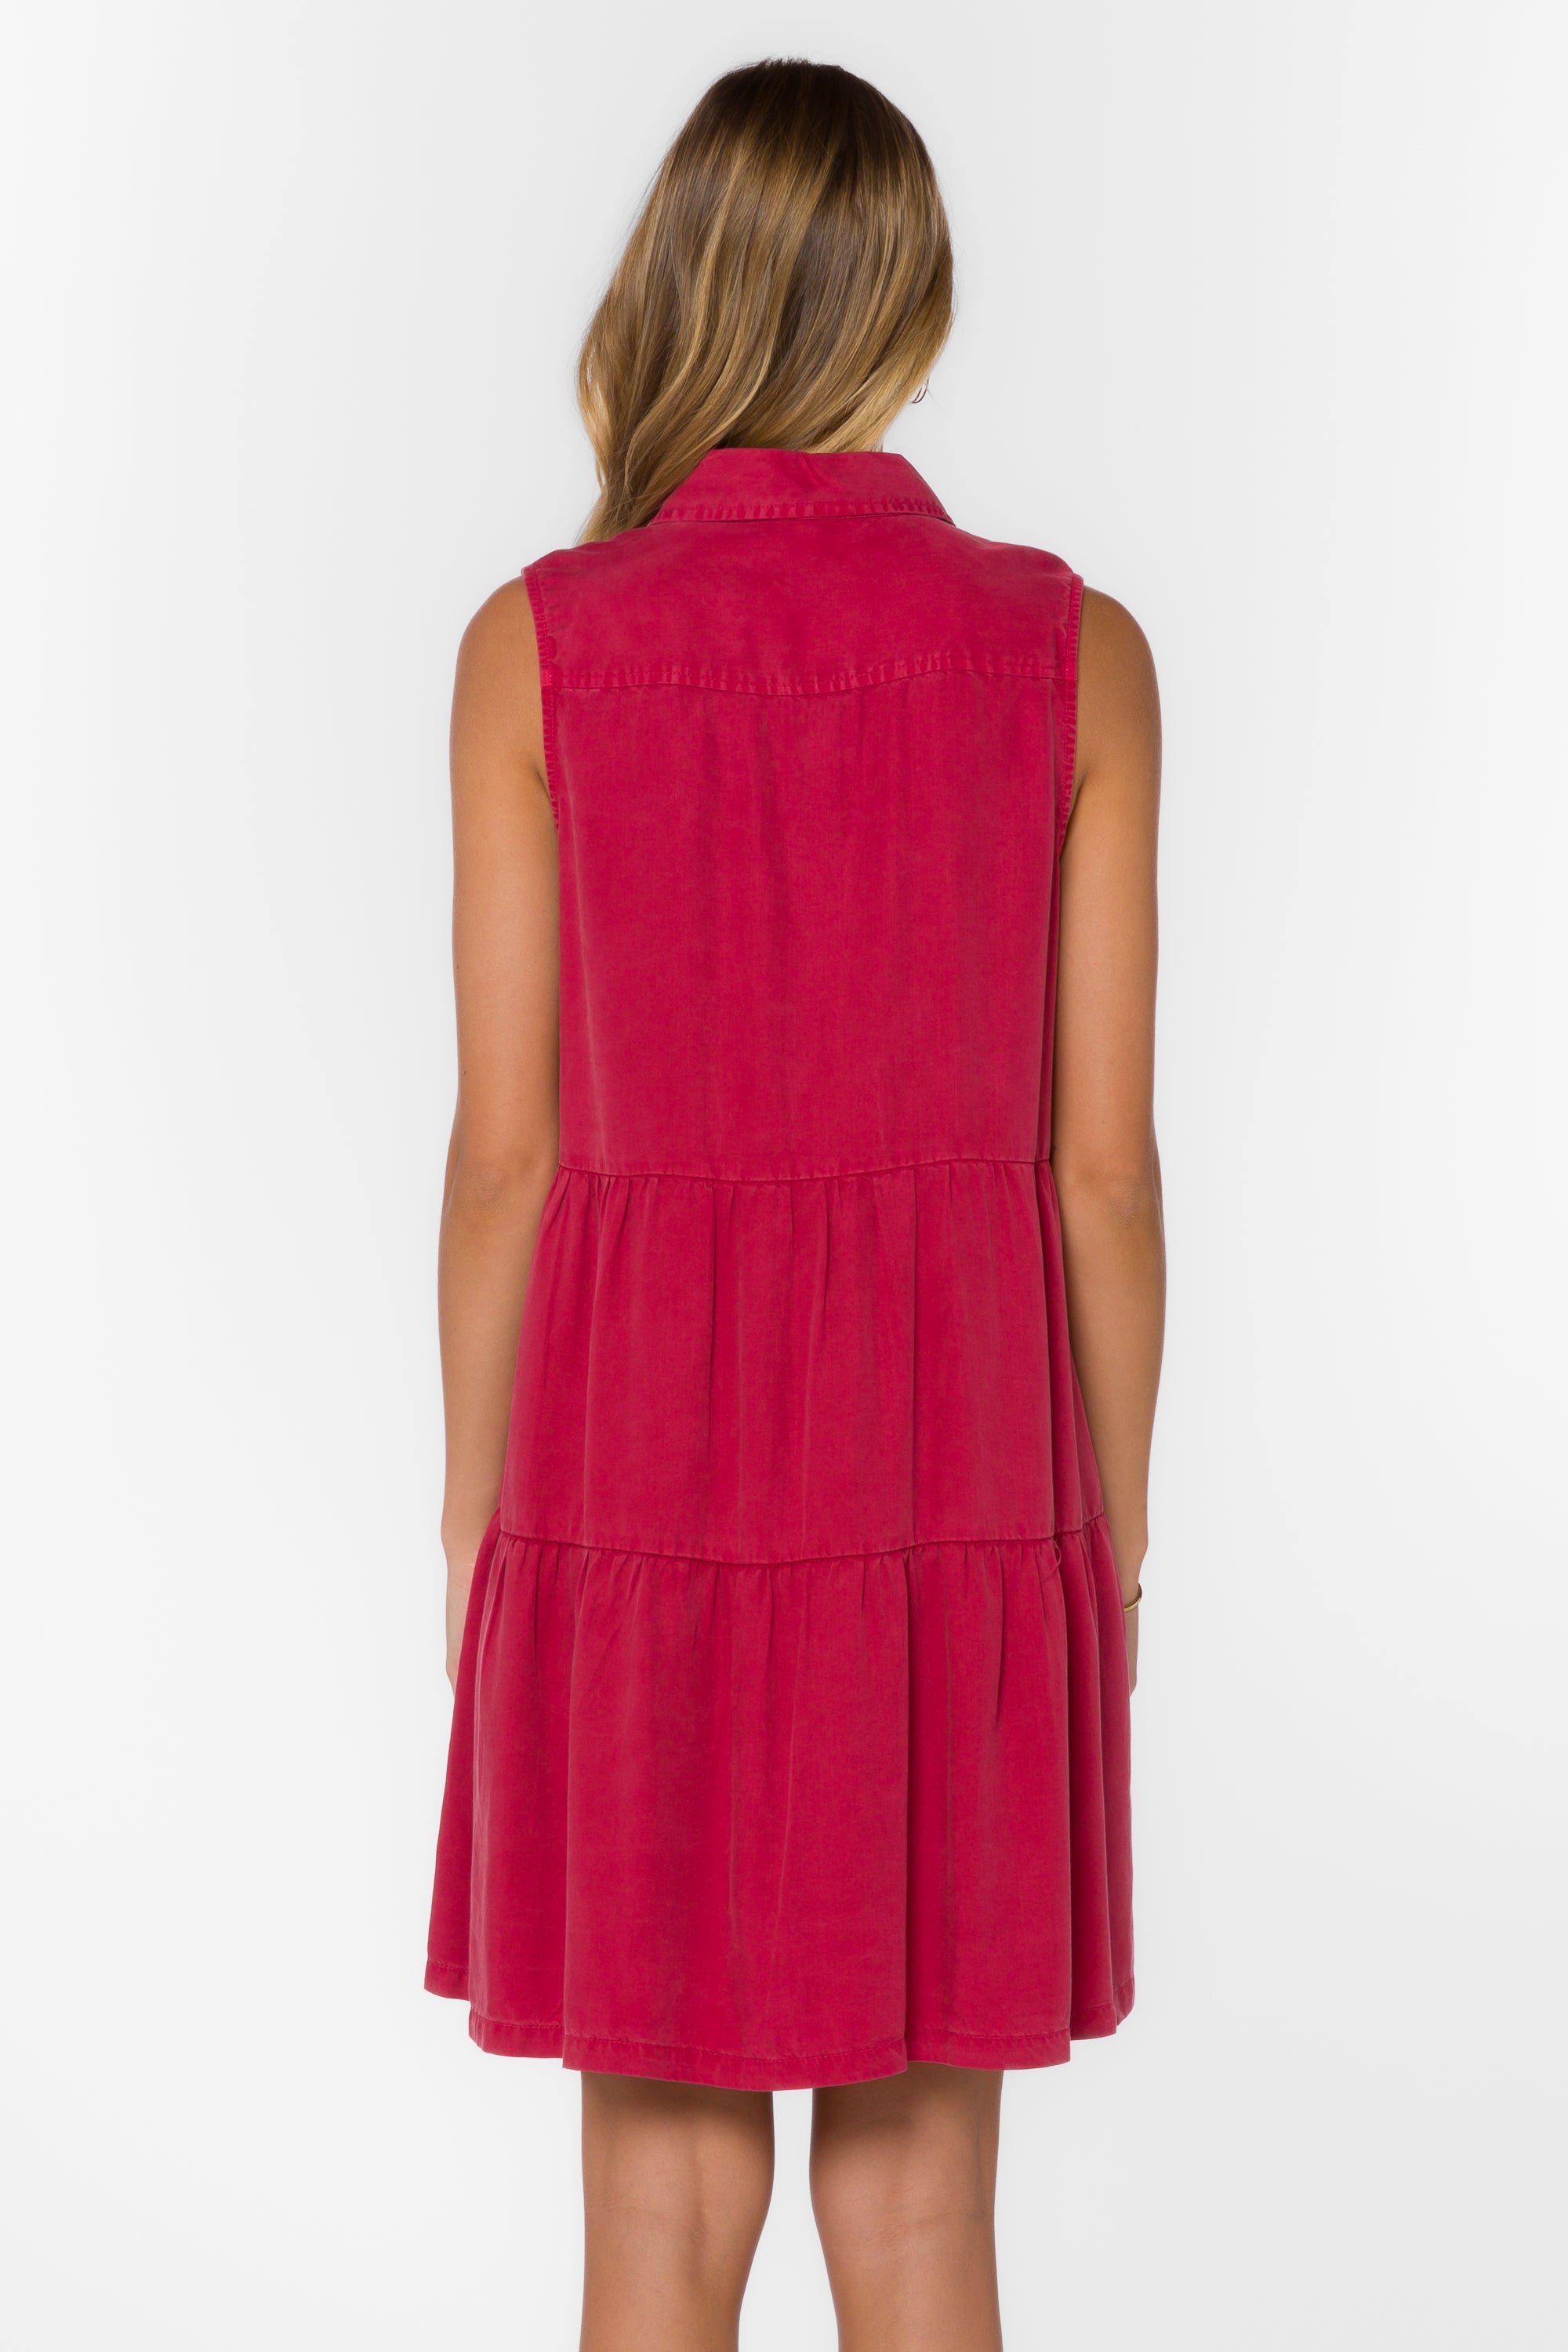 Collette Red Dress - Dresses - Velvet Heart Clothing